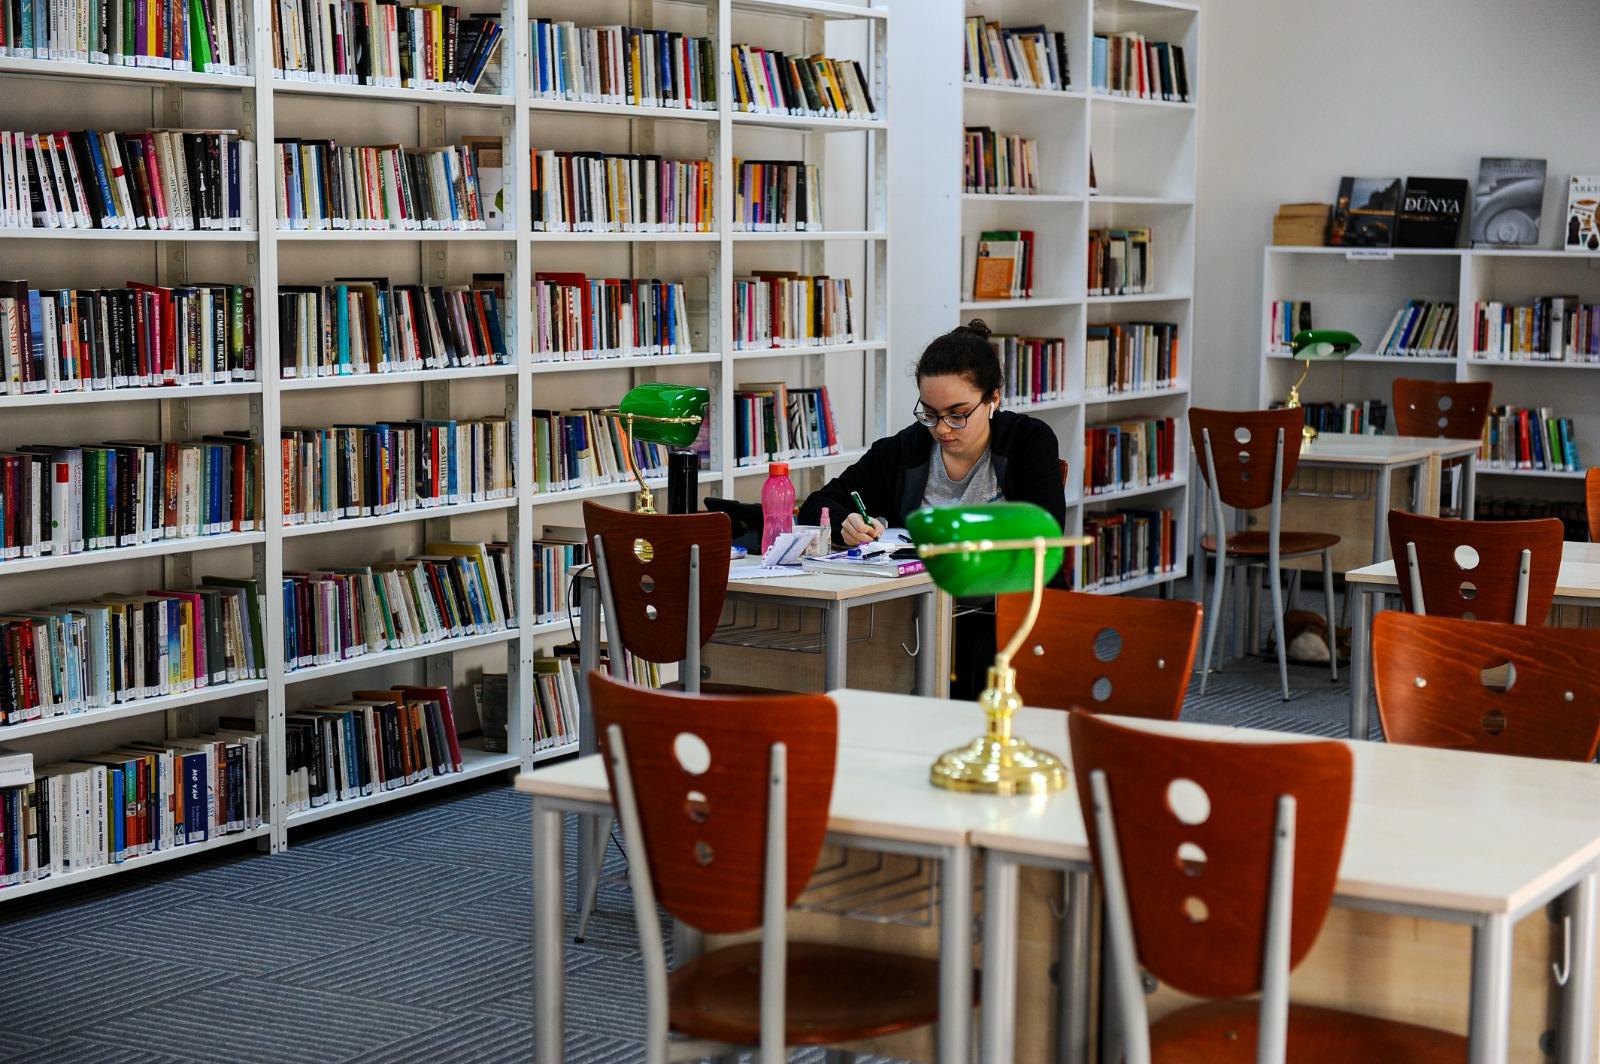 Karşıyaka Belediyesi Toplumda okuma alışkanlığının artmasına katkıda bulunmak için kente yeni kütüphane ve kitaplıklar kazandıran Karşıyaka Belediyesi, ‘Kütüphane Haftası’nı kutlamak ve farkındalık yaratmak için söyleşi düzenliyor.